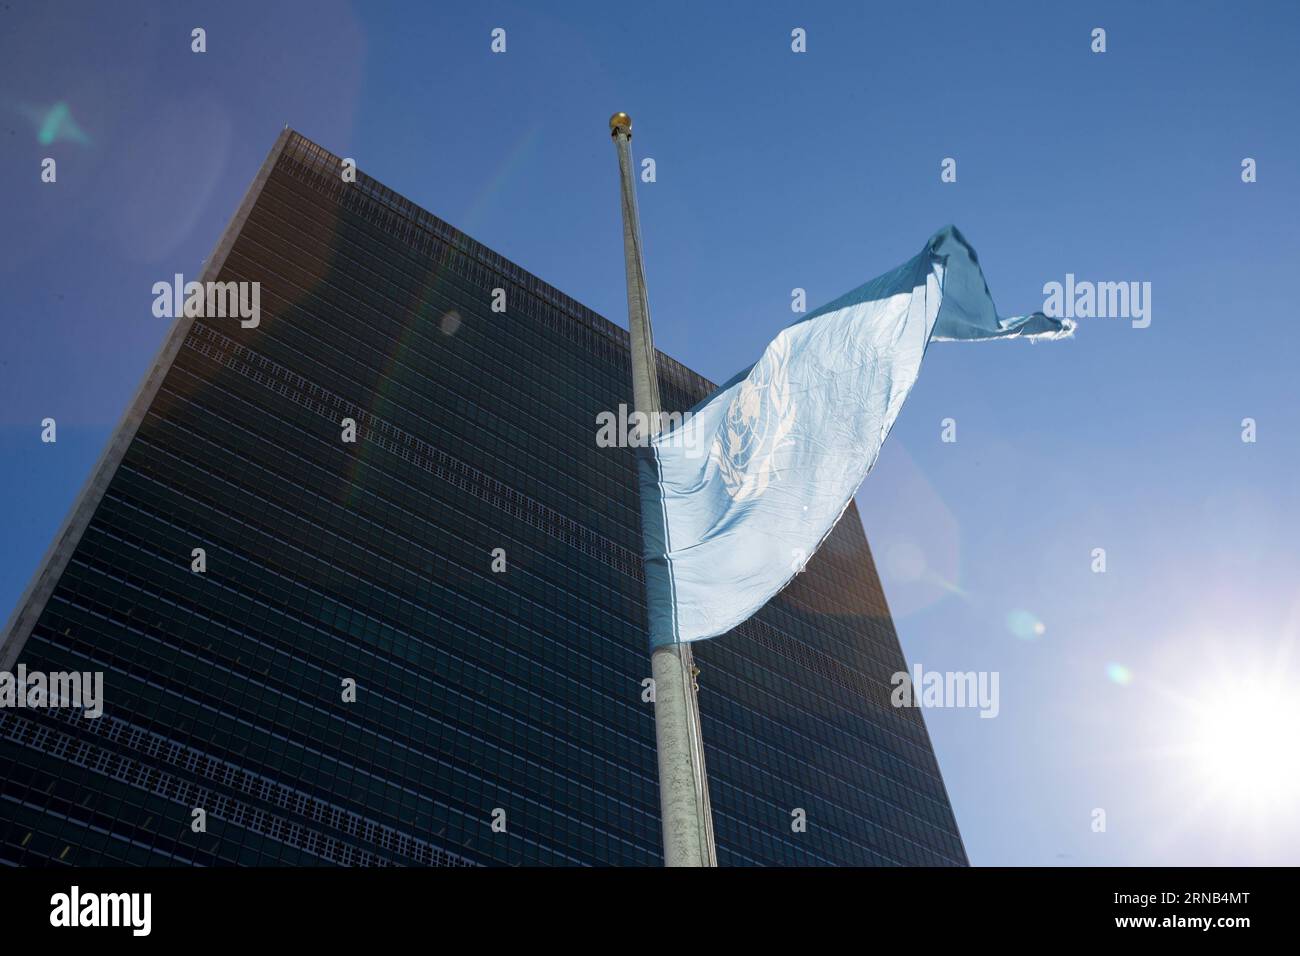 (160218) -- NATIONS UNIES, le 18 février 2016 -- le drapeau des Nations Unies flotte en Berne à la mémoire de feu l'ancien secrétaire général Boutros Boutros-Ghali, au siège de l'ONU à New York, le 18 février 2016. Le Secrétaire général des Nations Unies Ban Ki-moon a rendu jeudi hommage à l'ancien chef de l'ONU Boutros Boutros-Ghali, décédé mardi à l'âge de 93 ans. Boutros Boutros-Ghali a eu à la fois la chance et le malheur d'être le premier Secrétaire général des Nations Unies de l'après-guerre froide, a déclaré Ban lors de la session de l'Assemblée générale à la mémoire de Boutros Boutros-Ghali. Boutros-Ghali de E Banque D'Images